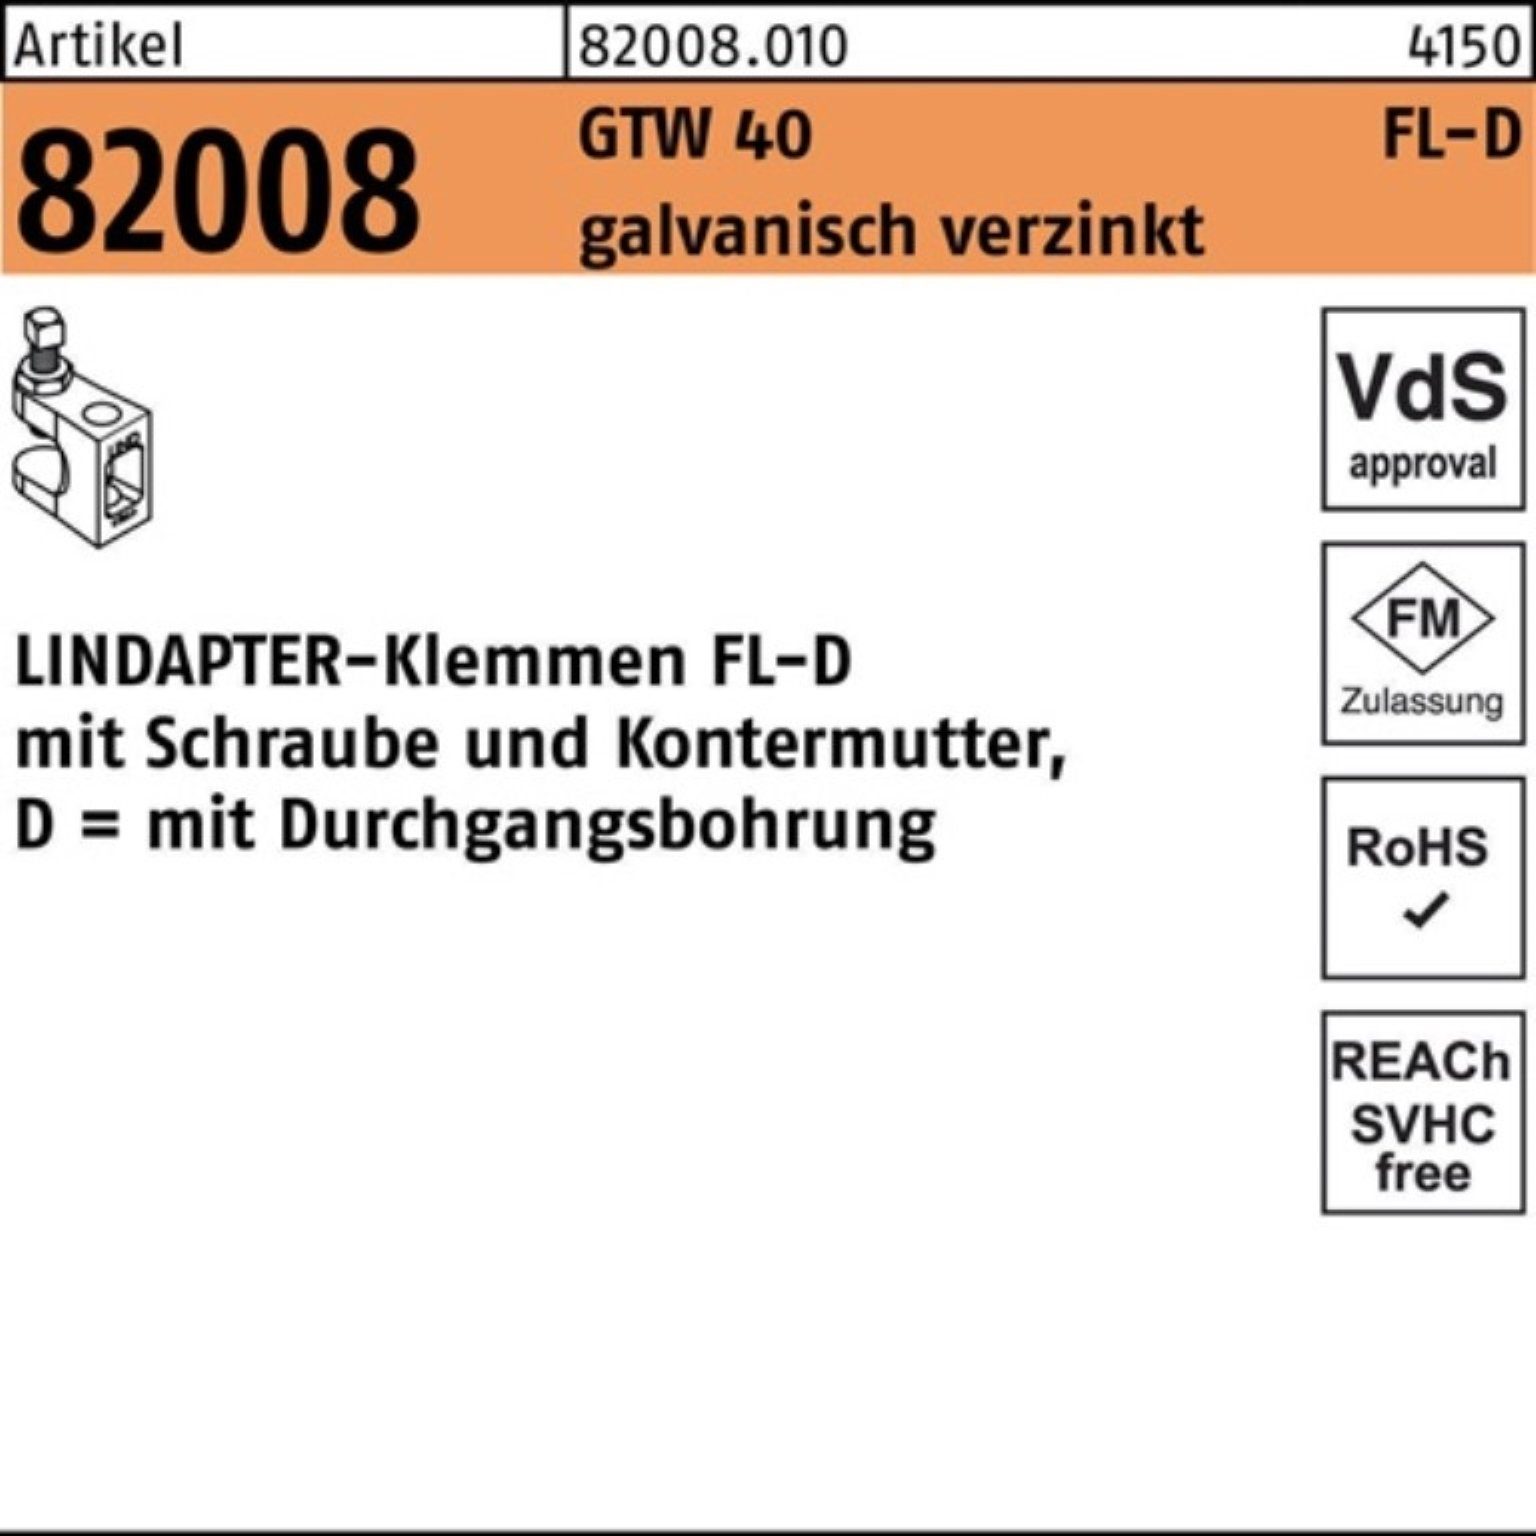 Klemmen Pack Stück Lindapter 7 40 100er 1 R GTW galv.verz. 82008 FL D - Klemmen 1 FL-D